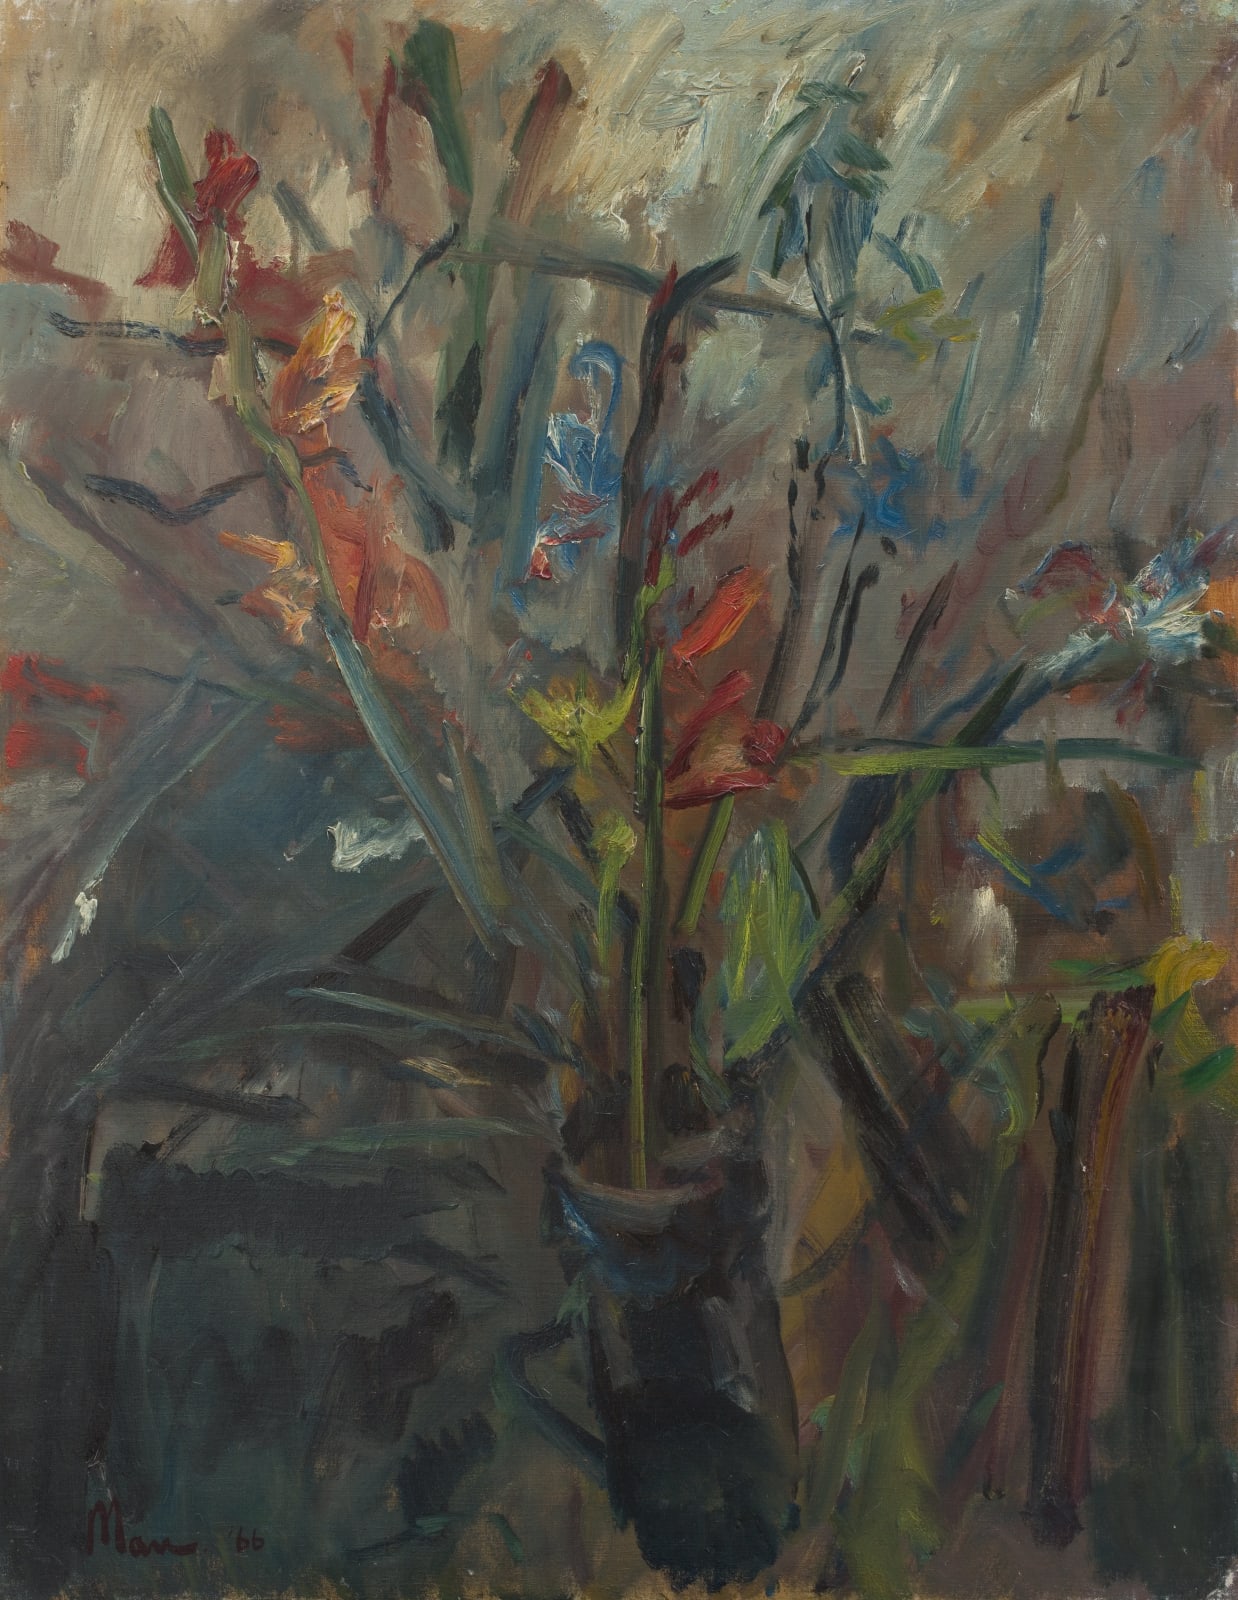 Leslie Marr, Flowers in a Jug, 1966